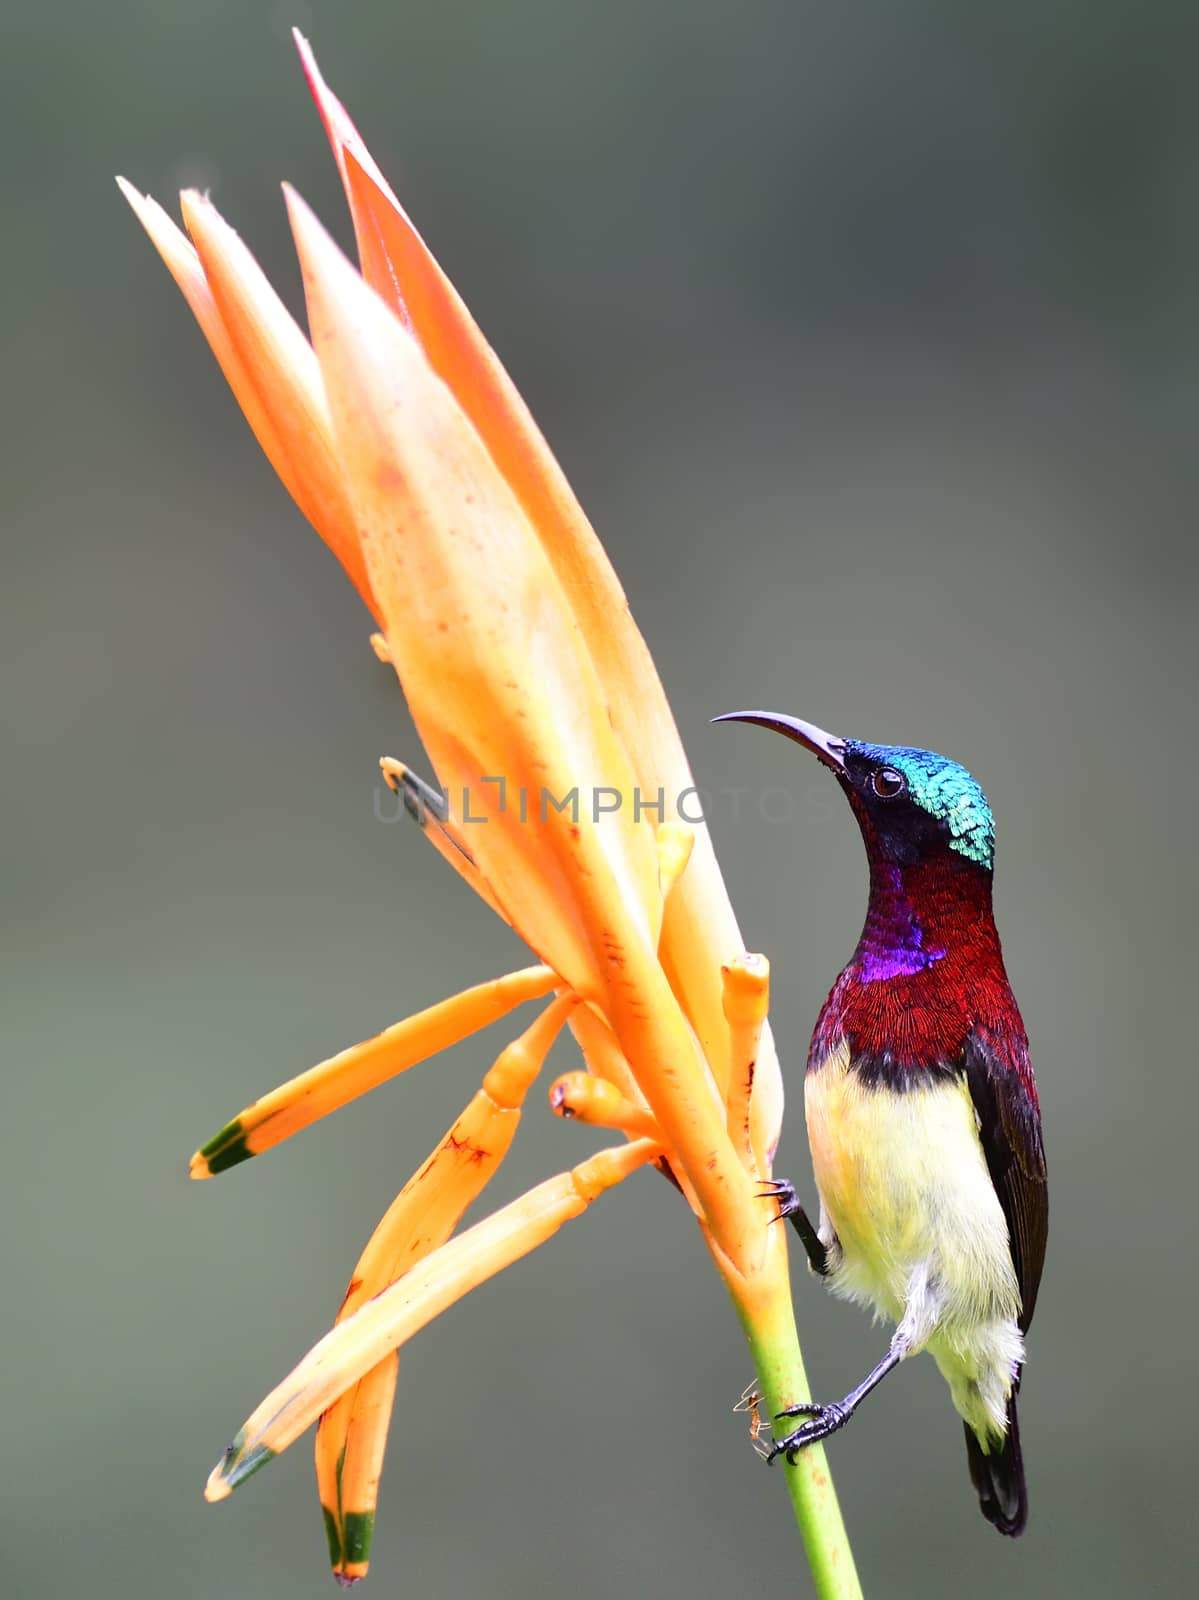 Crimson-backed sunbird by rkbalaji